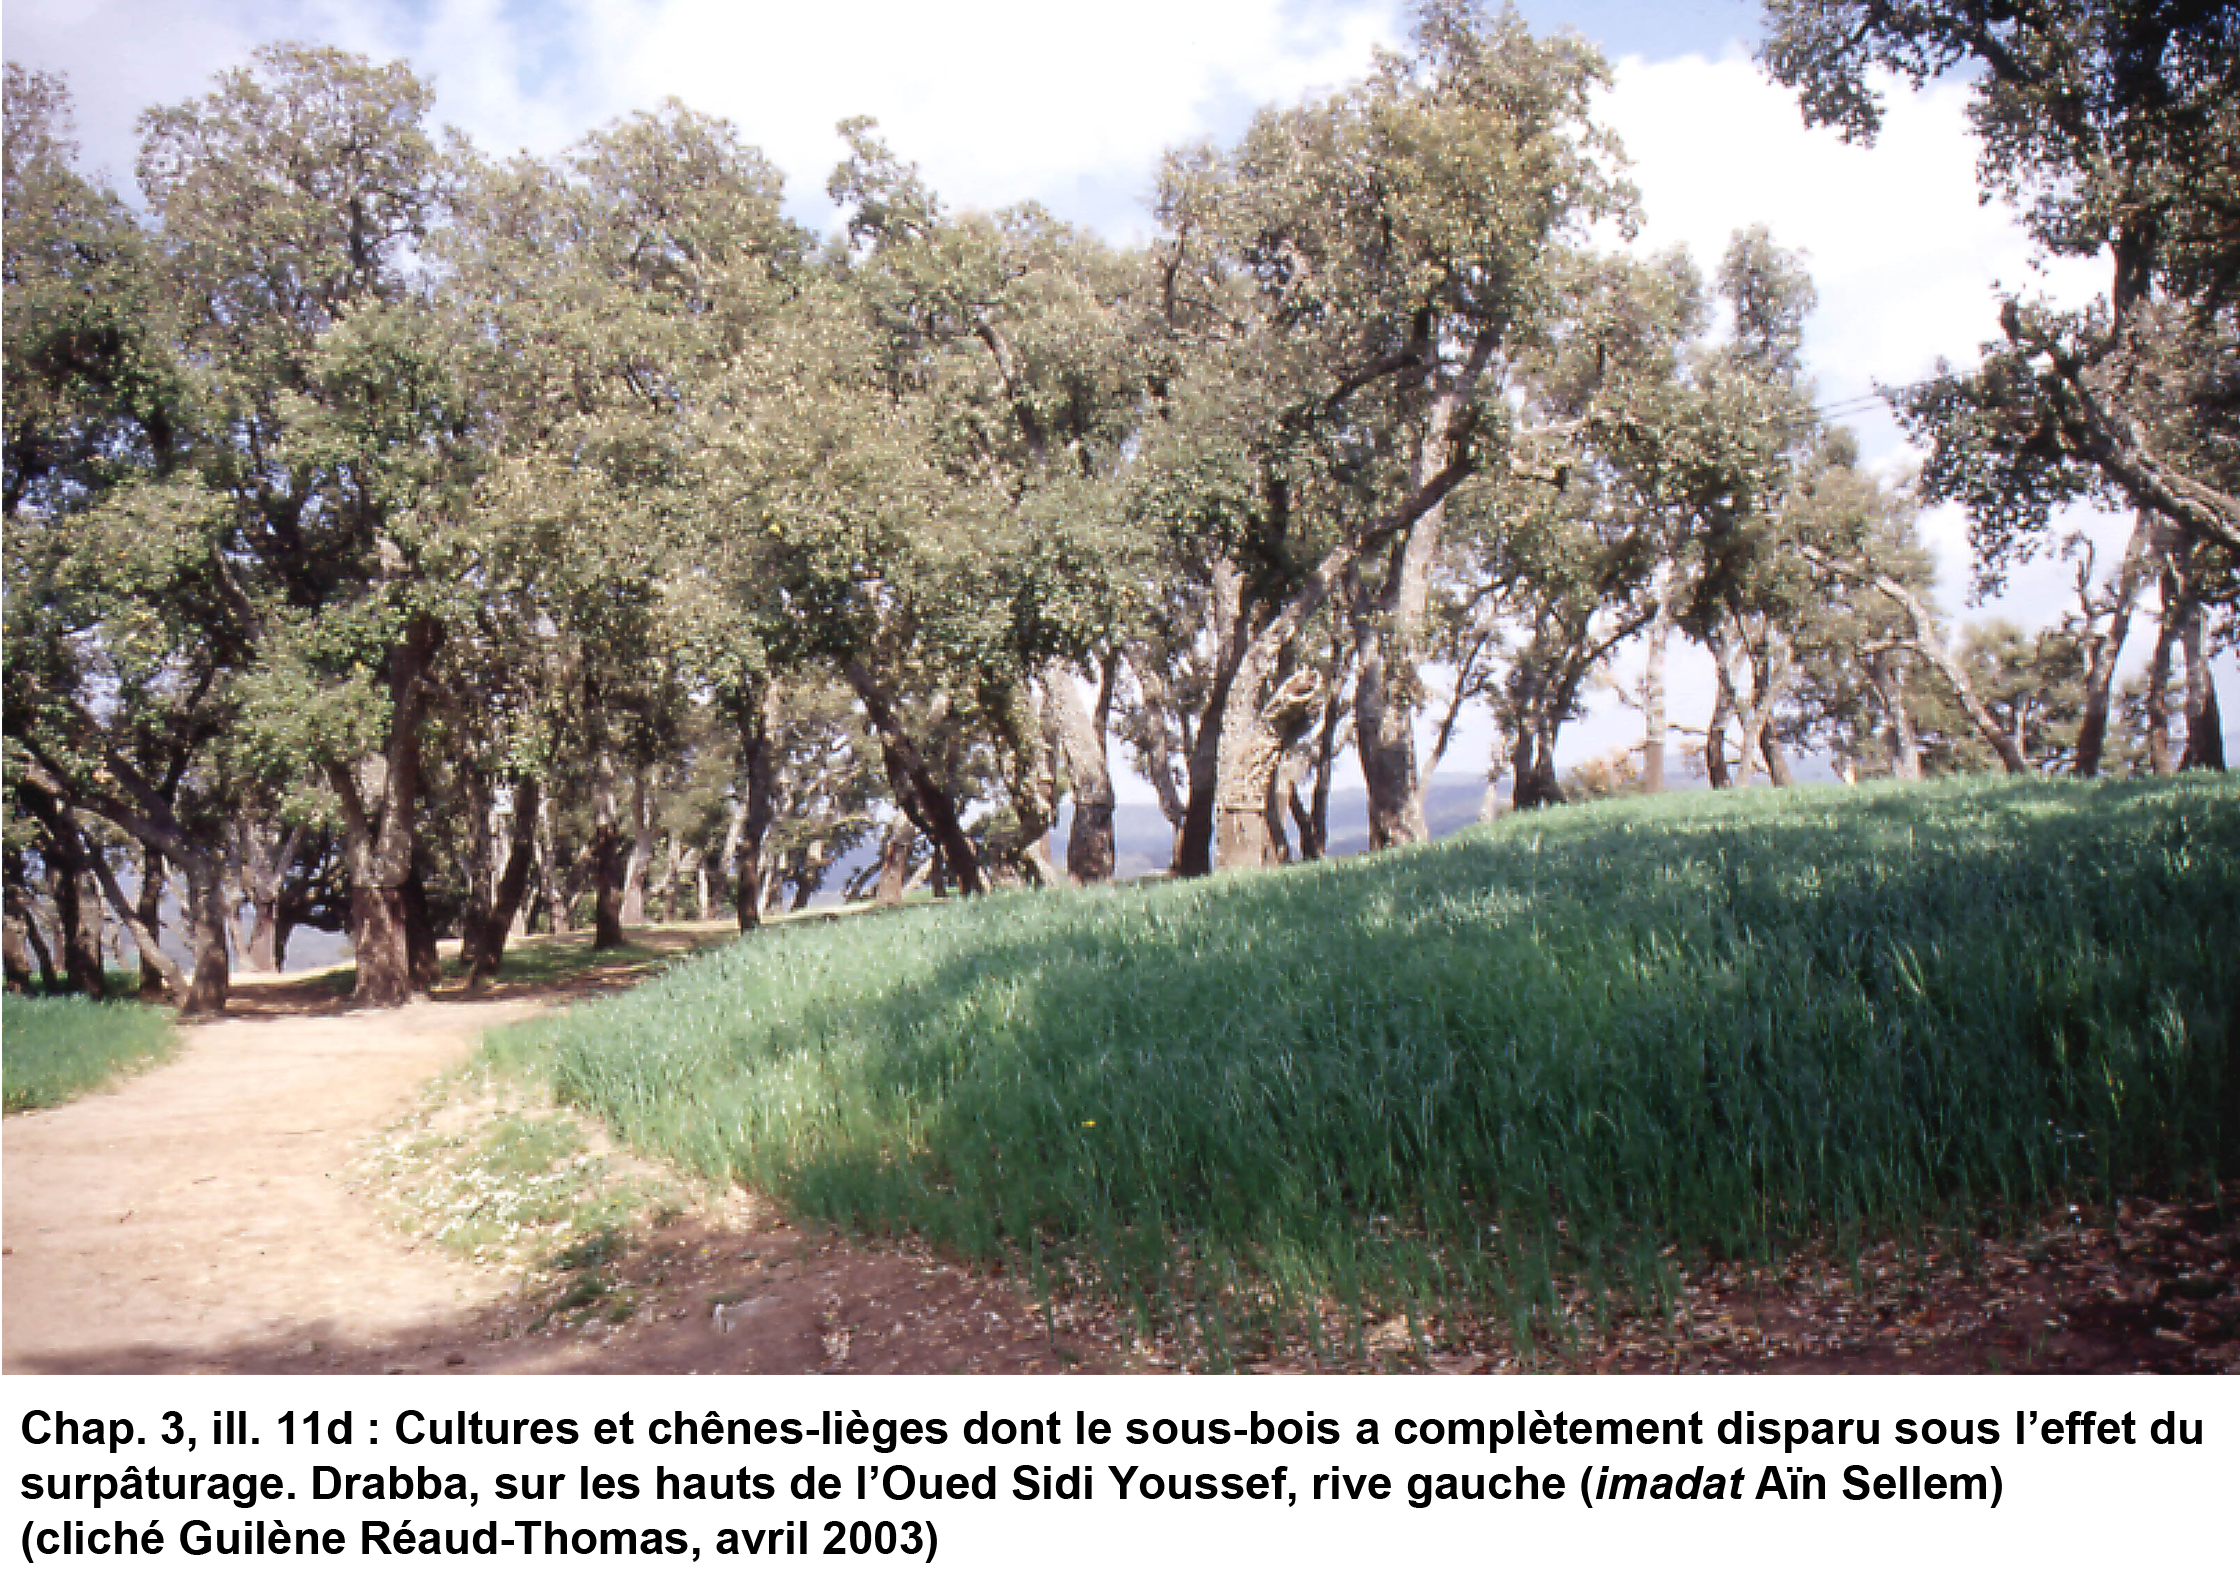 11d- Cultures et chênes-lièges dont le sous-bois a complètement disparu sous l’effet du surpâturage